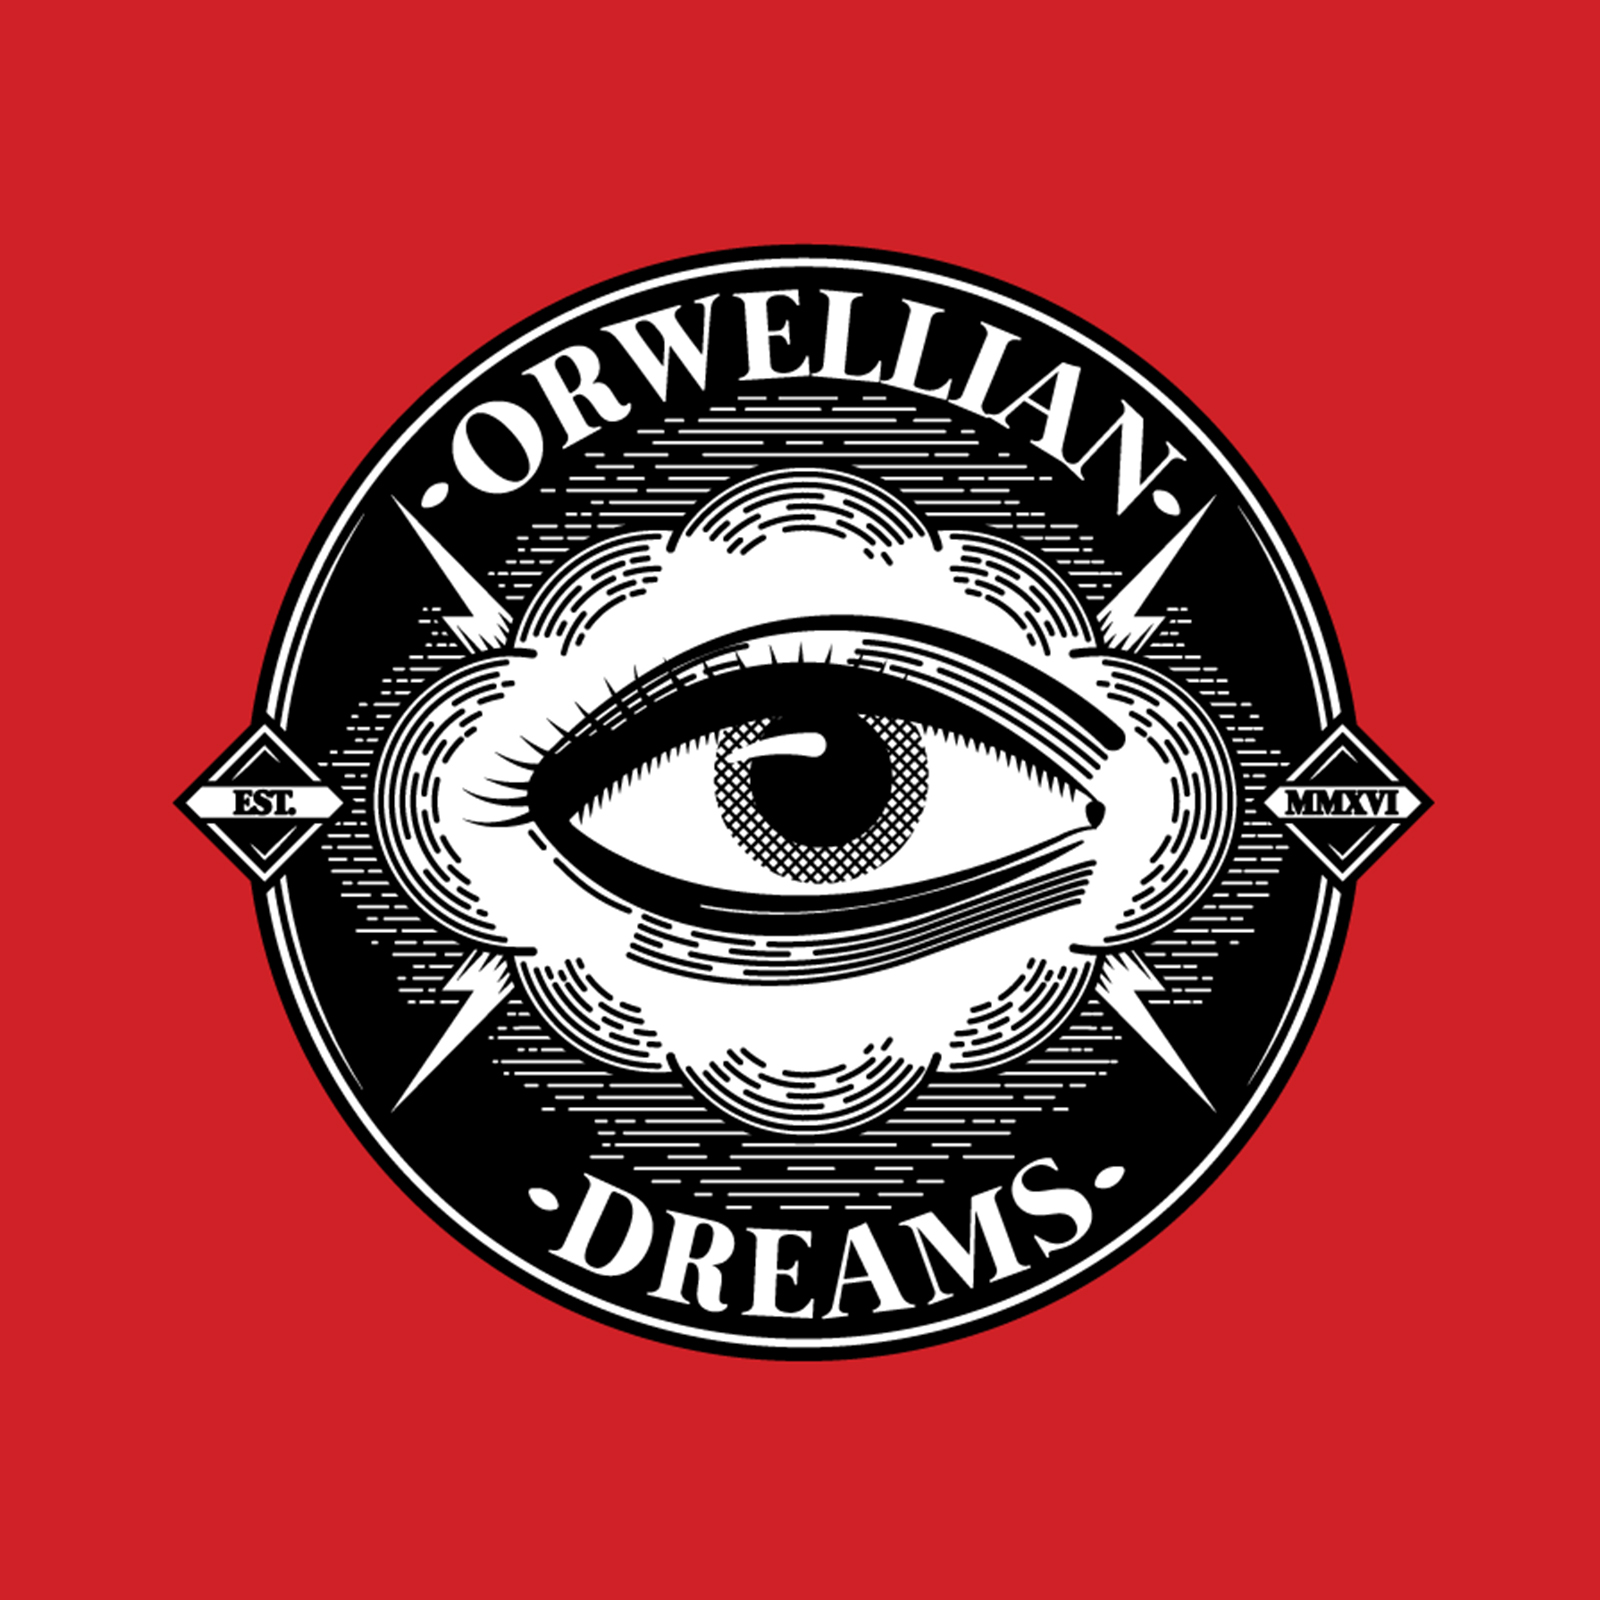 An Orwellian Dream